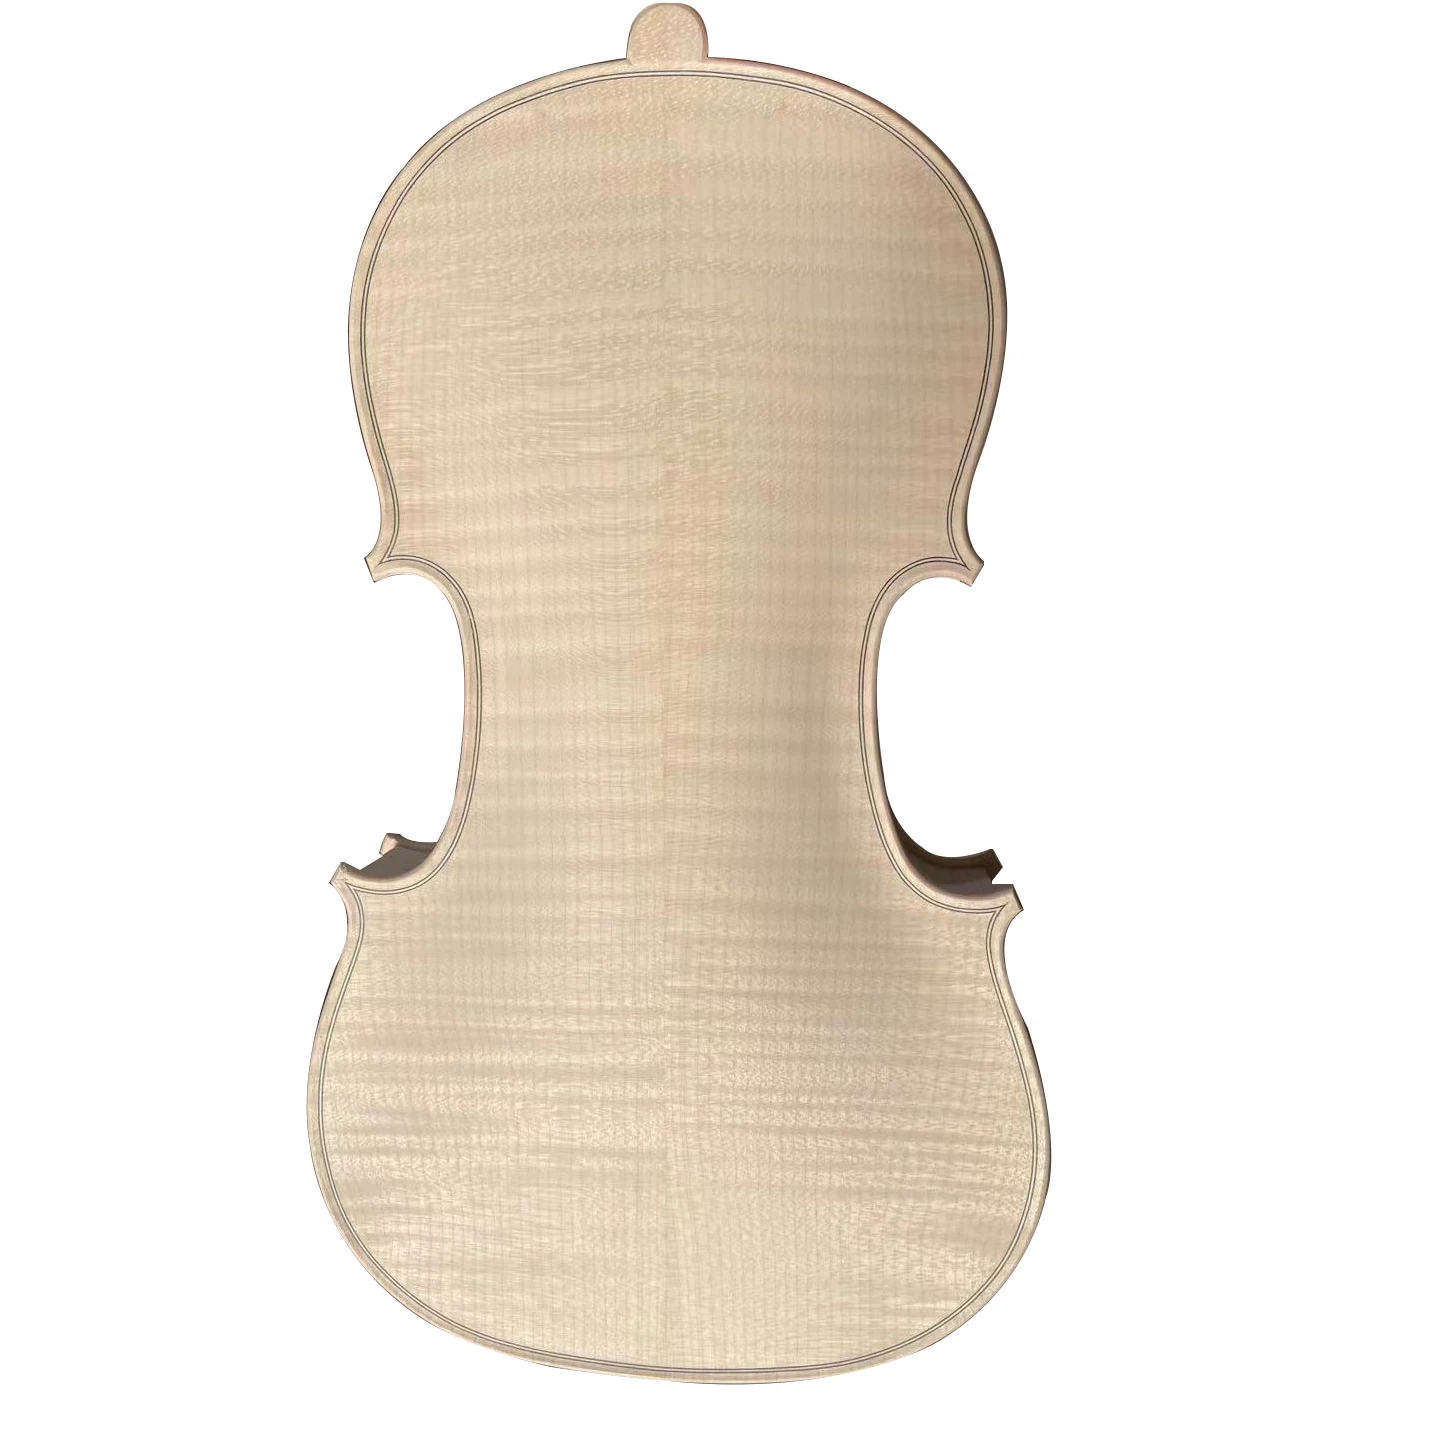 

Белая скрипка с чехлом, профессиональная ели класса AAA +, белый лезвие, необработанная Европейская искусственная кожа, 4/4 богатых полосок